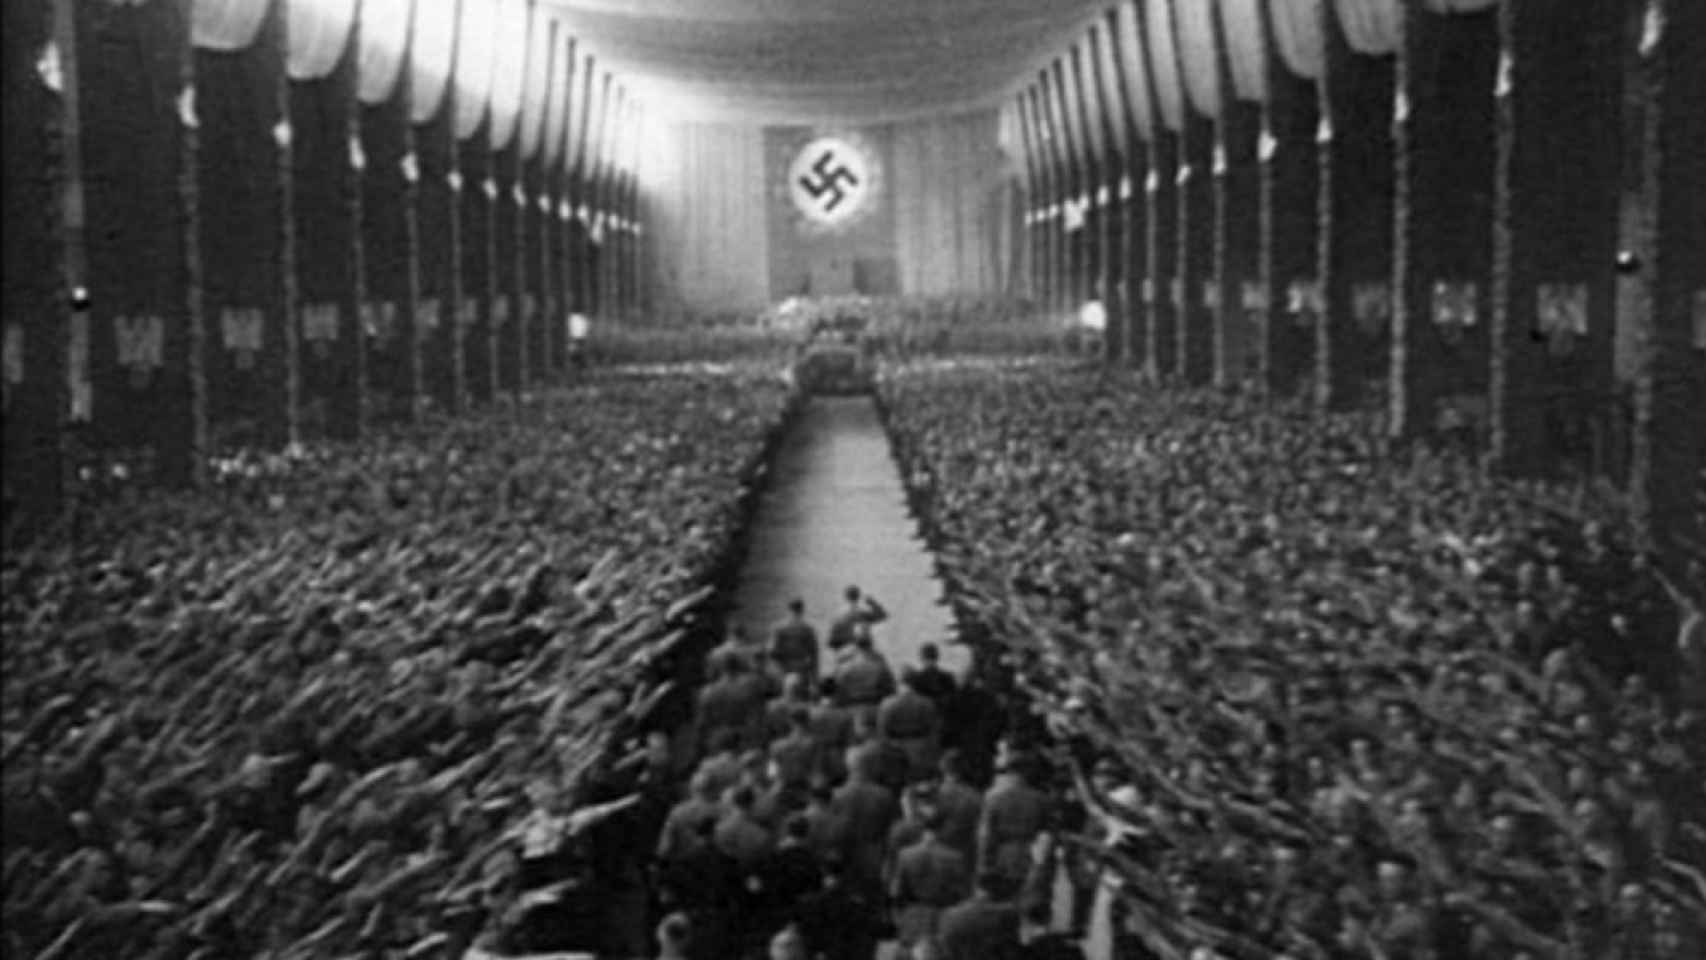 Fotograma del documental 'El triunfo de la libertad' que muestra uno de los baños de masas de Hitler.